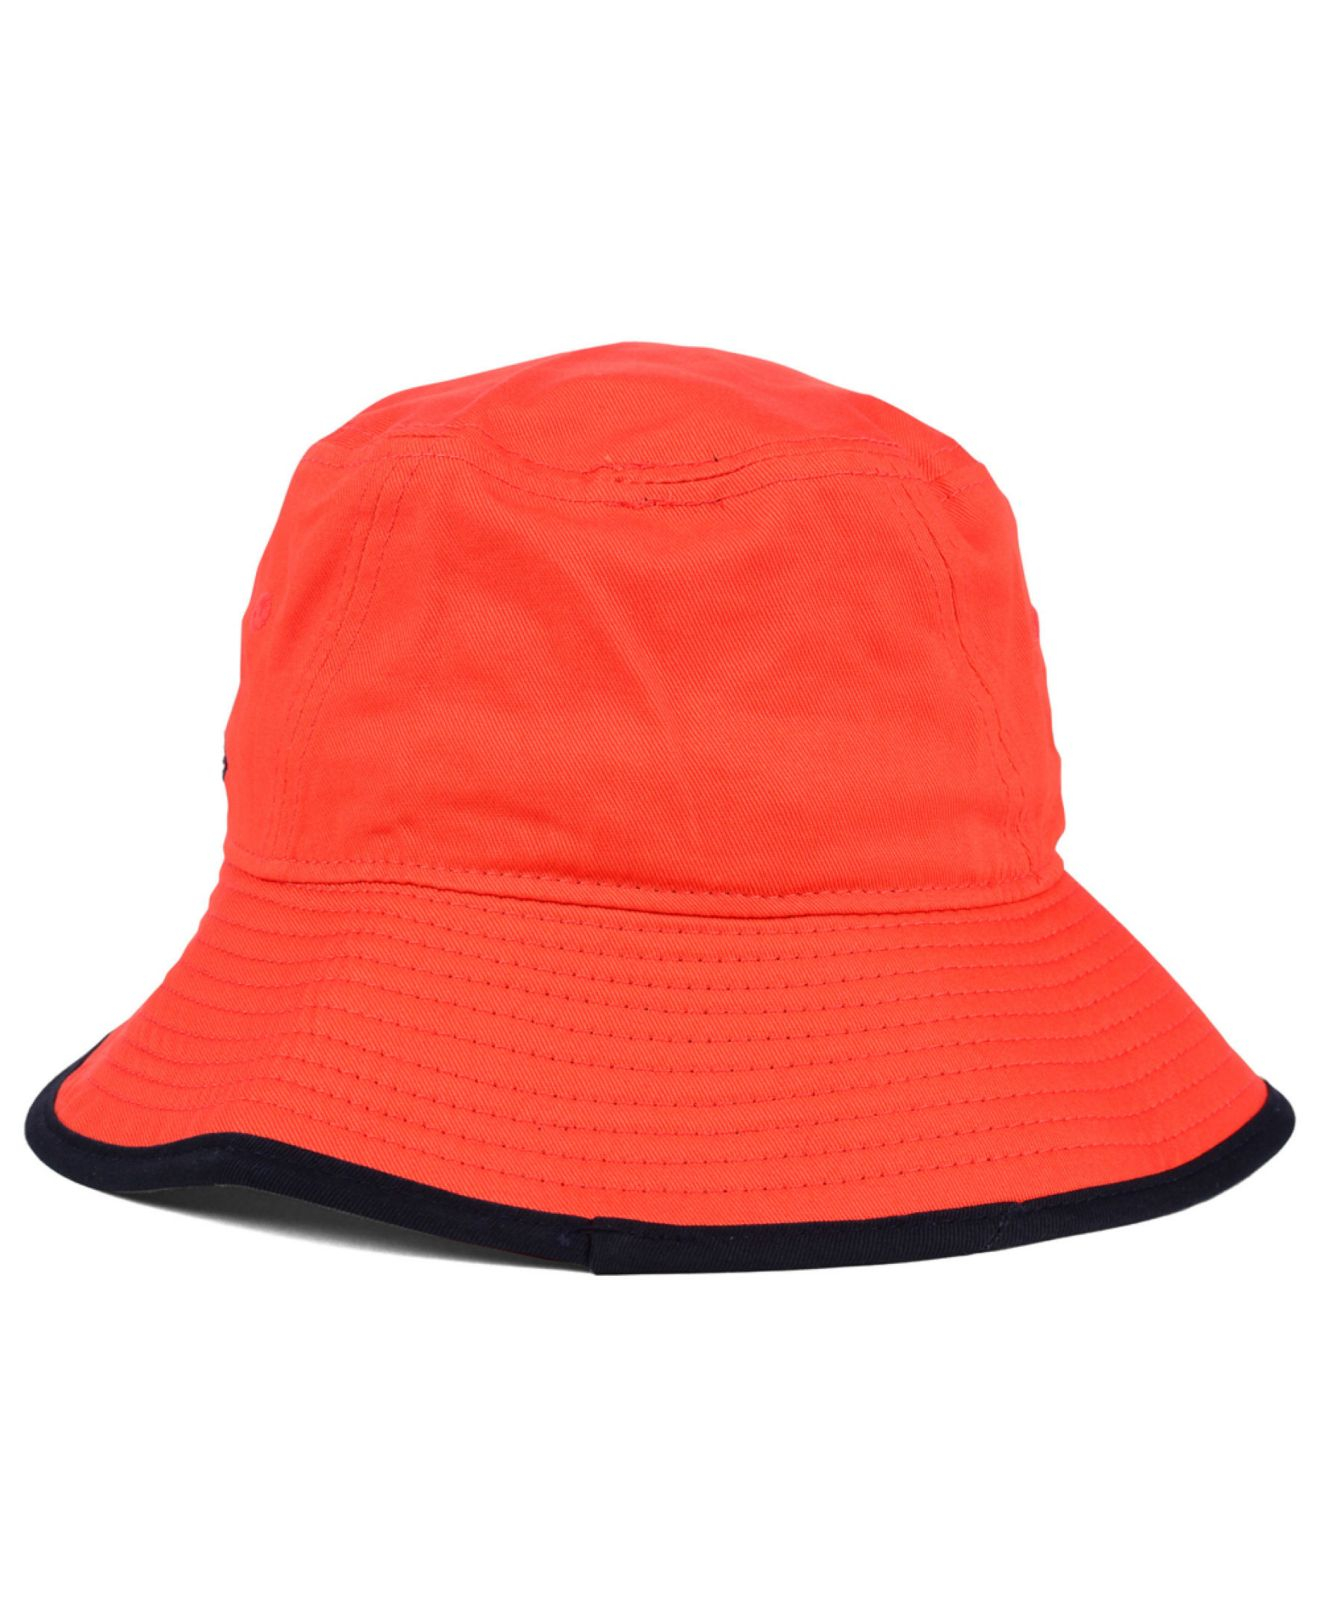 KTZ Syracuse Orange Tip Bucket Hat for Men - Lyst